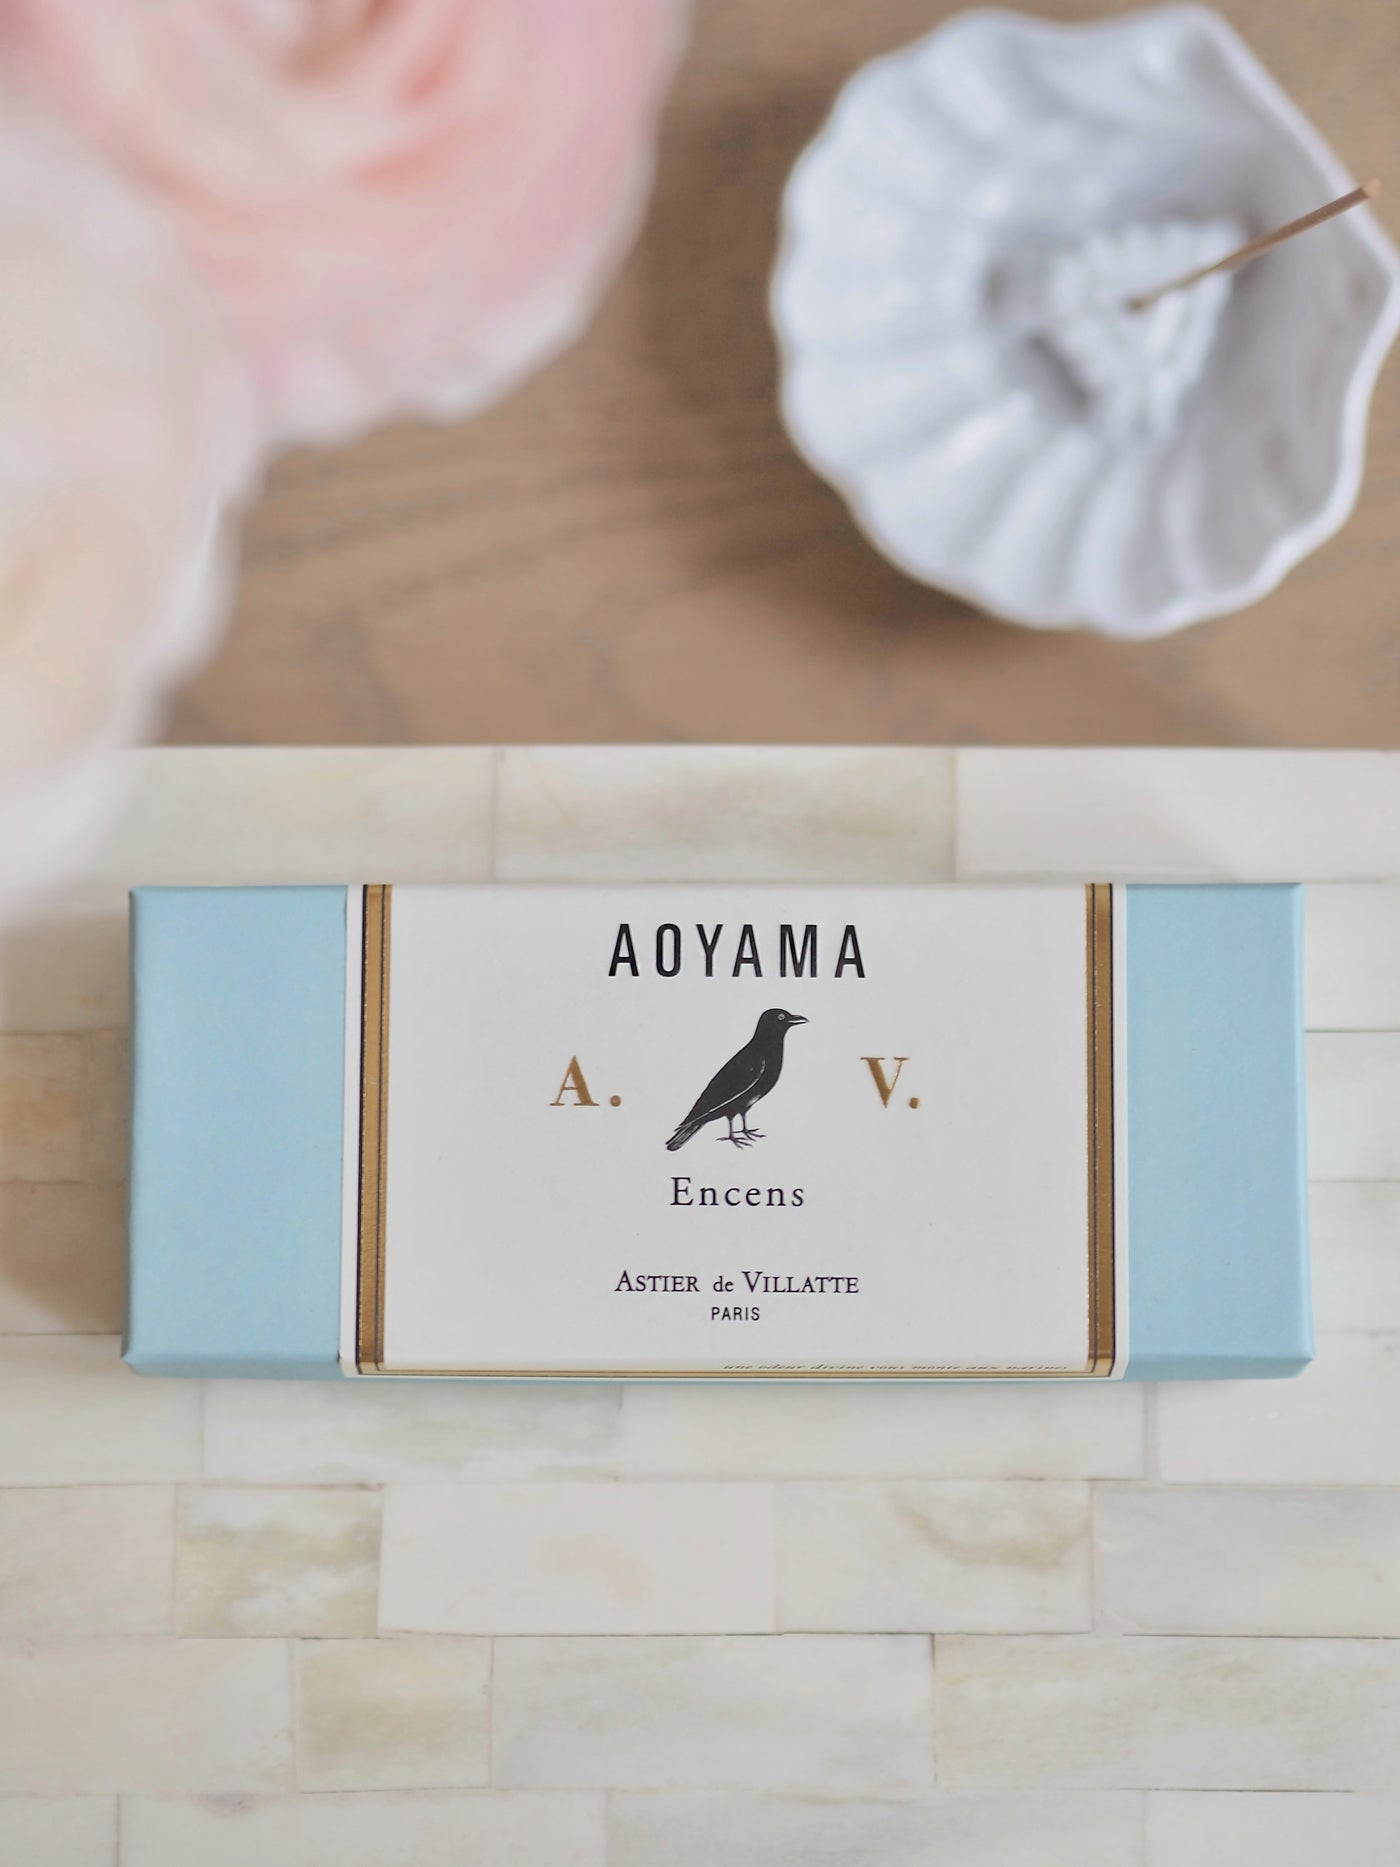 Aoyama Incense Box